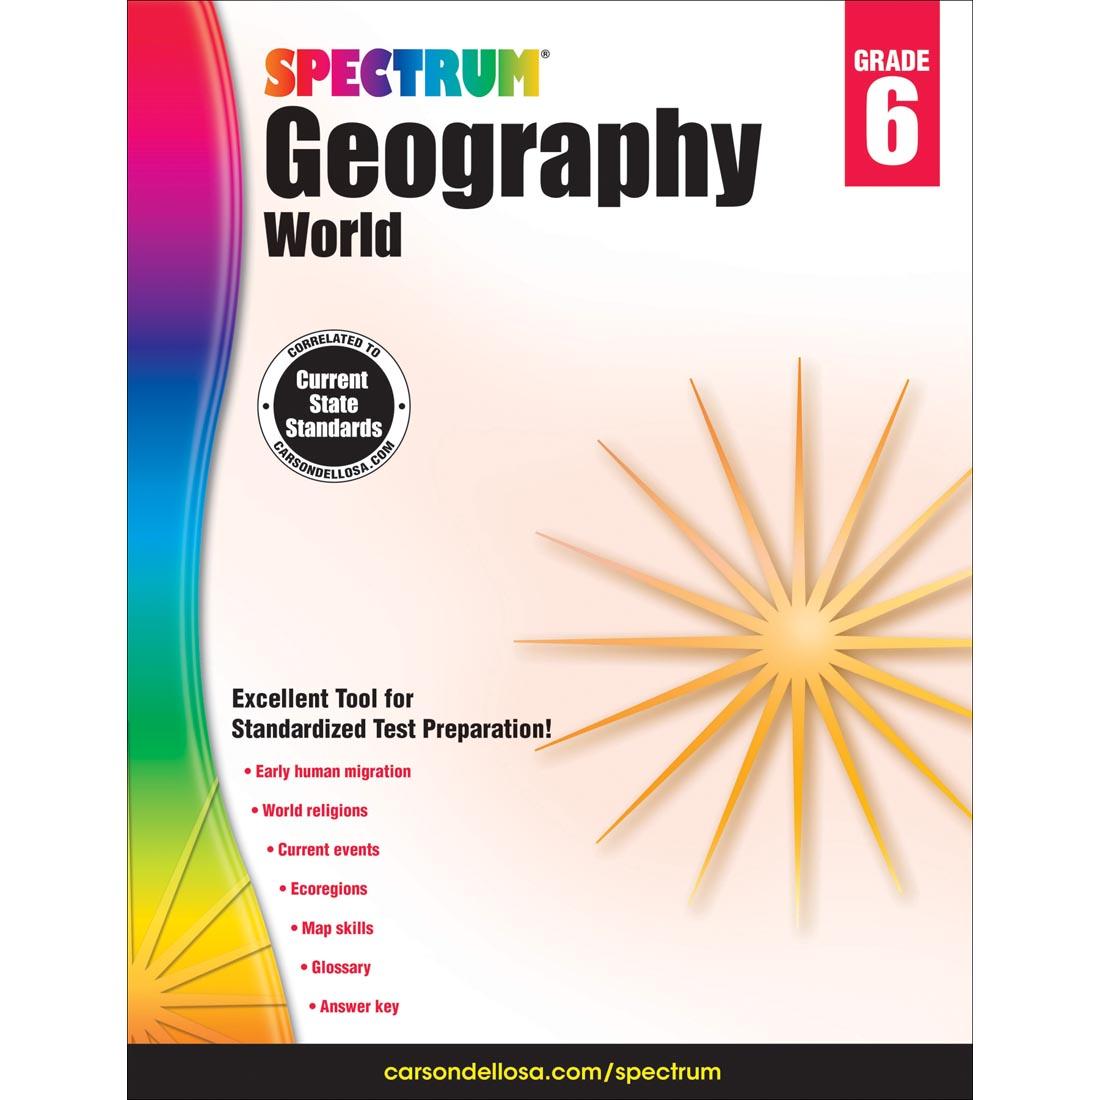 Spectrum Geography World by Carson Dellosa Grade 6